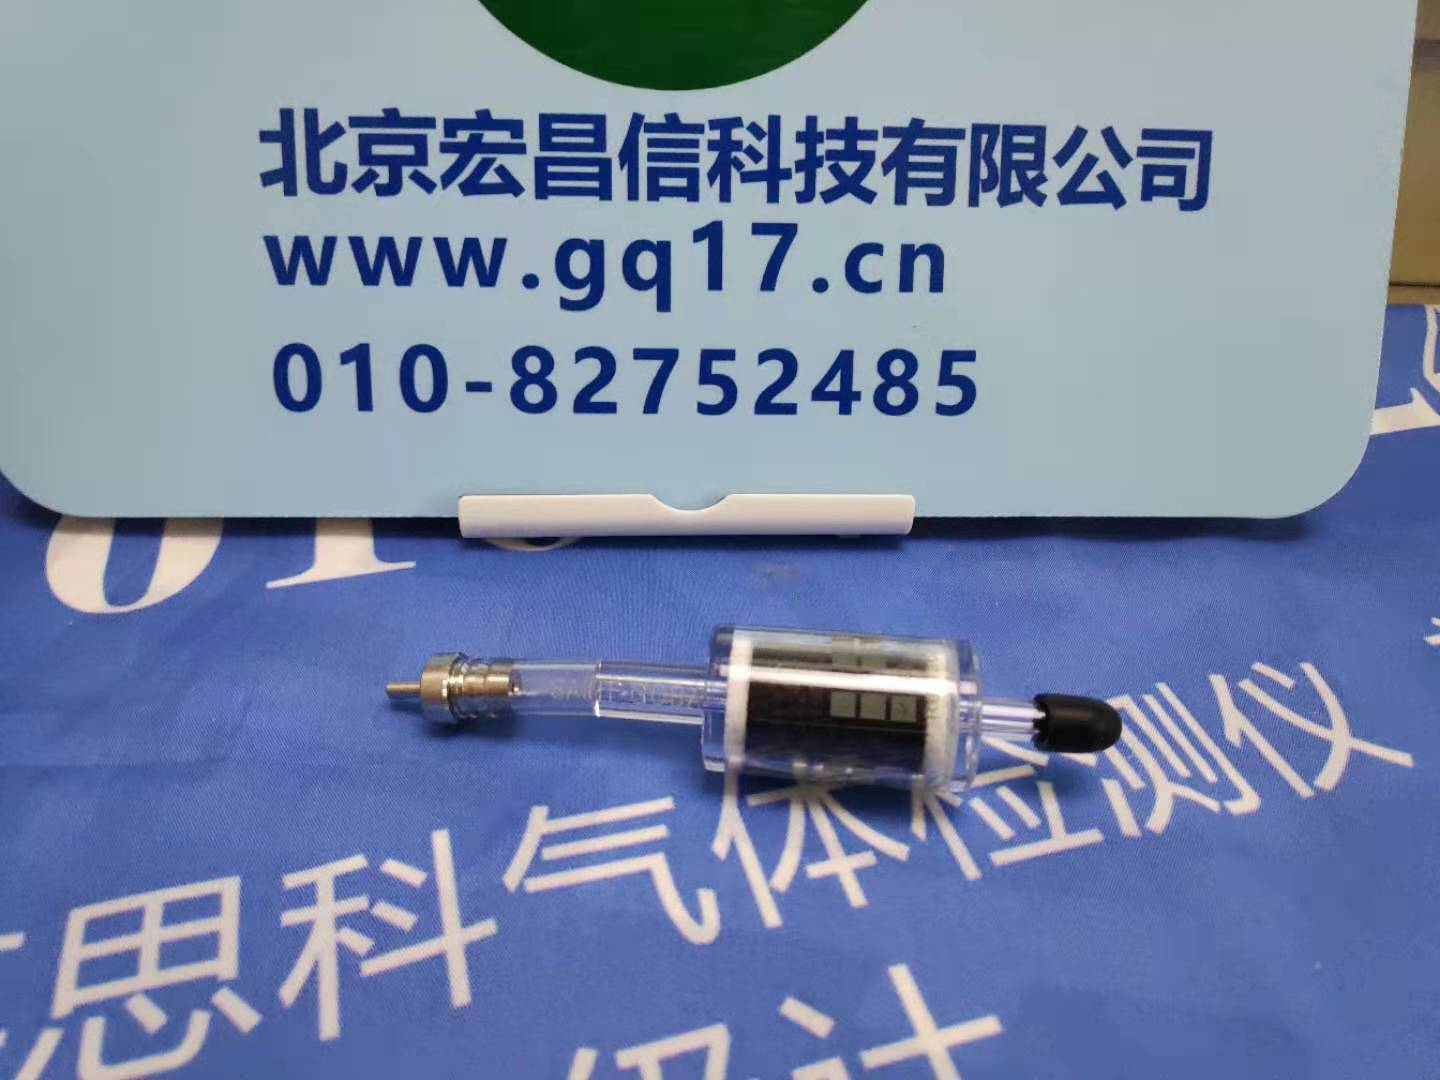 霍尼韦尔PGM-7340(ppbRAE-3000+)便携式VOC检测仪